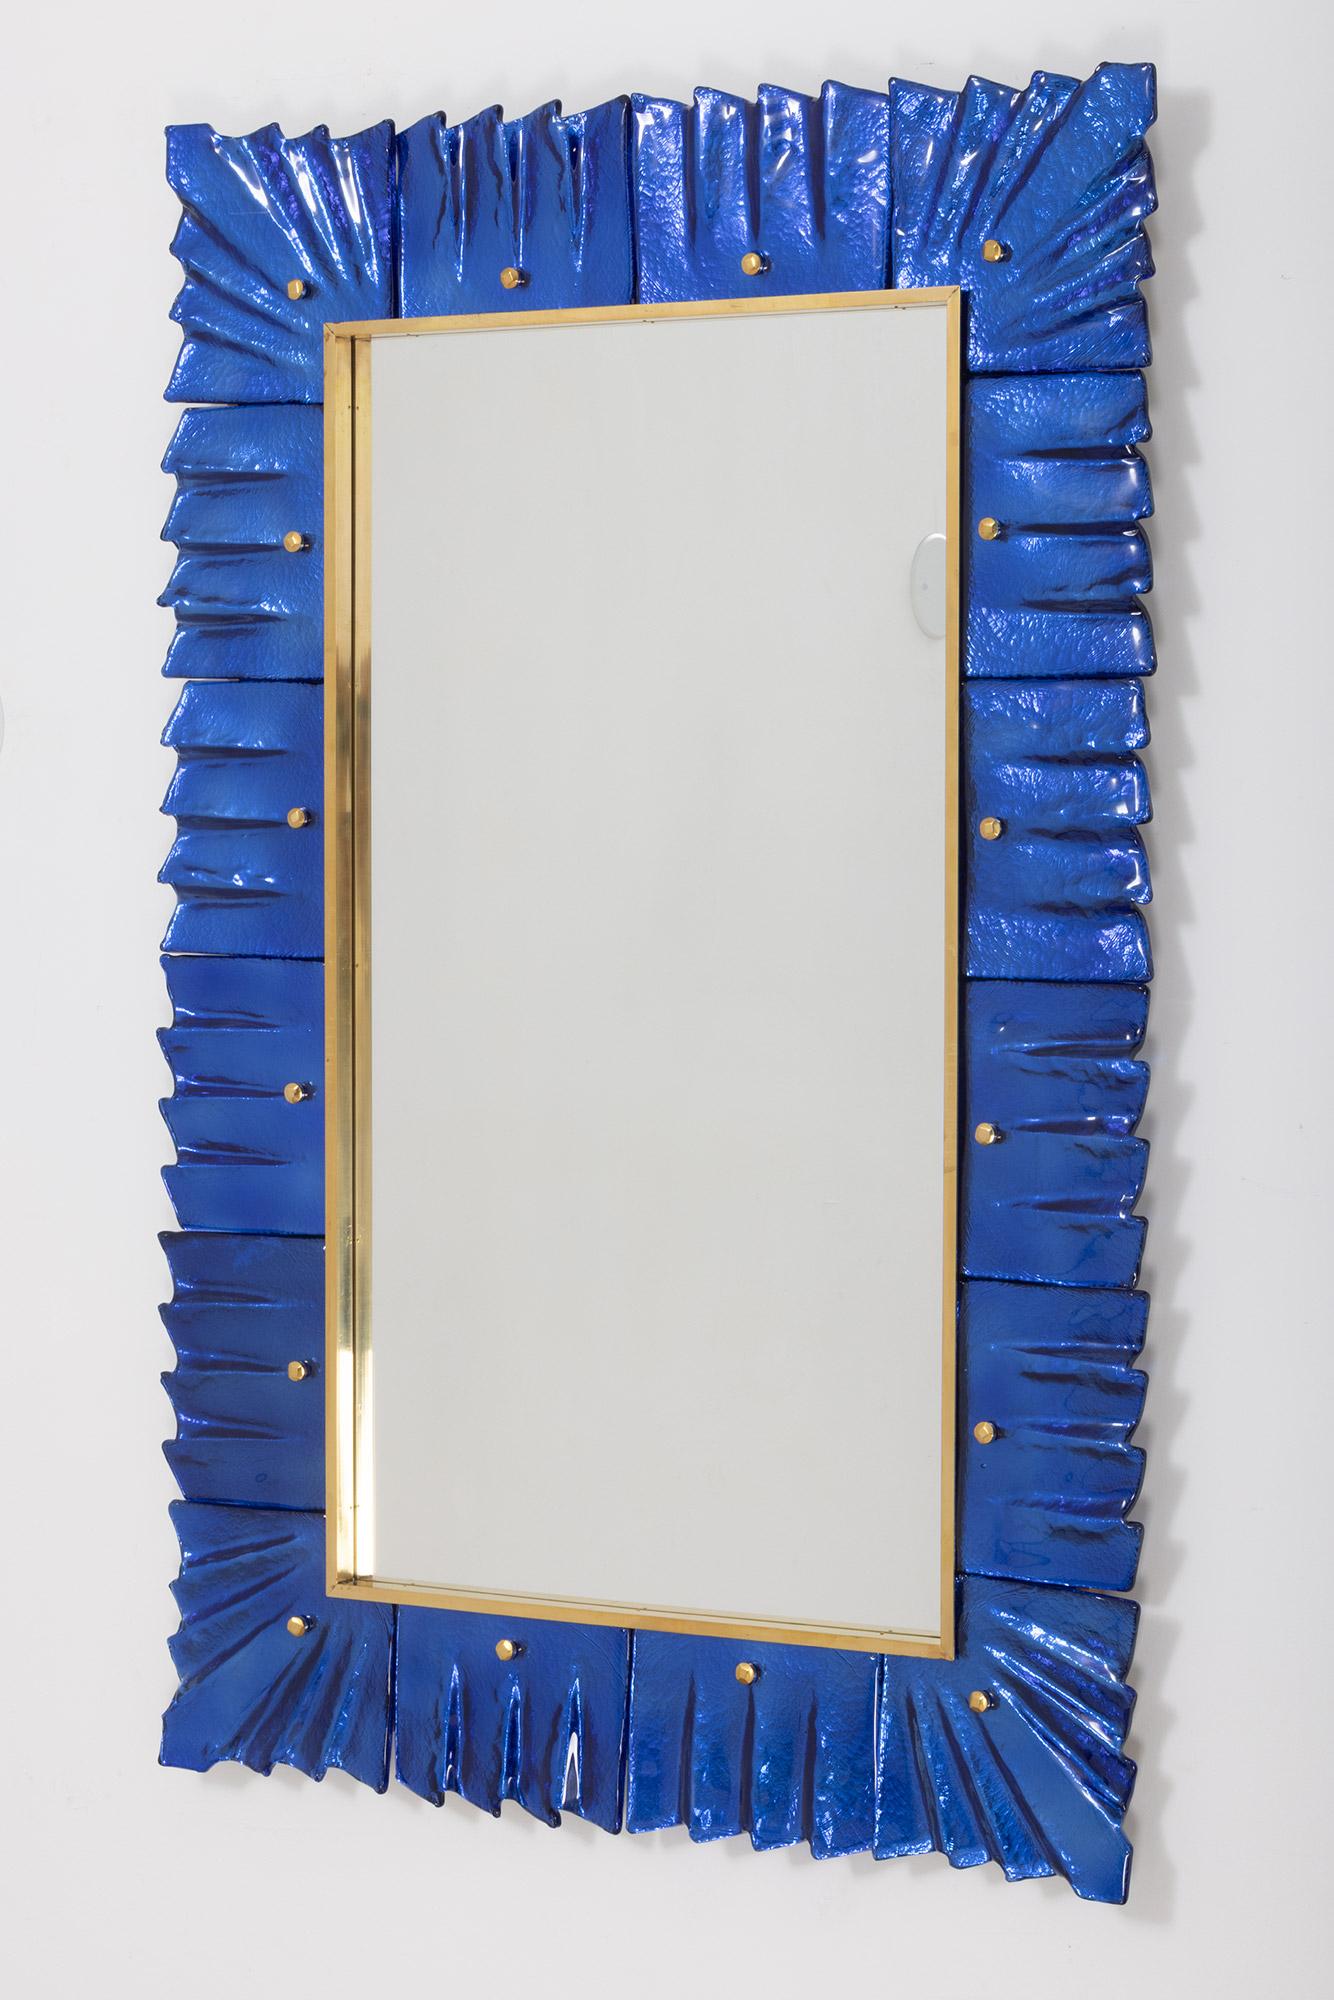 Miroir contemporain encadré en verre bleu cobalt de Murano, en stock
Plaque de miroir entourée de carreaux de verre ondulés de couleur bleu cobalt retenus par des cabochons en laiton. 
Fabriqué à la main par une équipe d'artisans à Venise, en